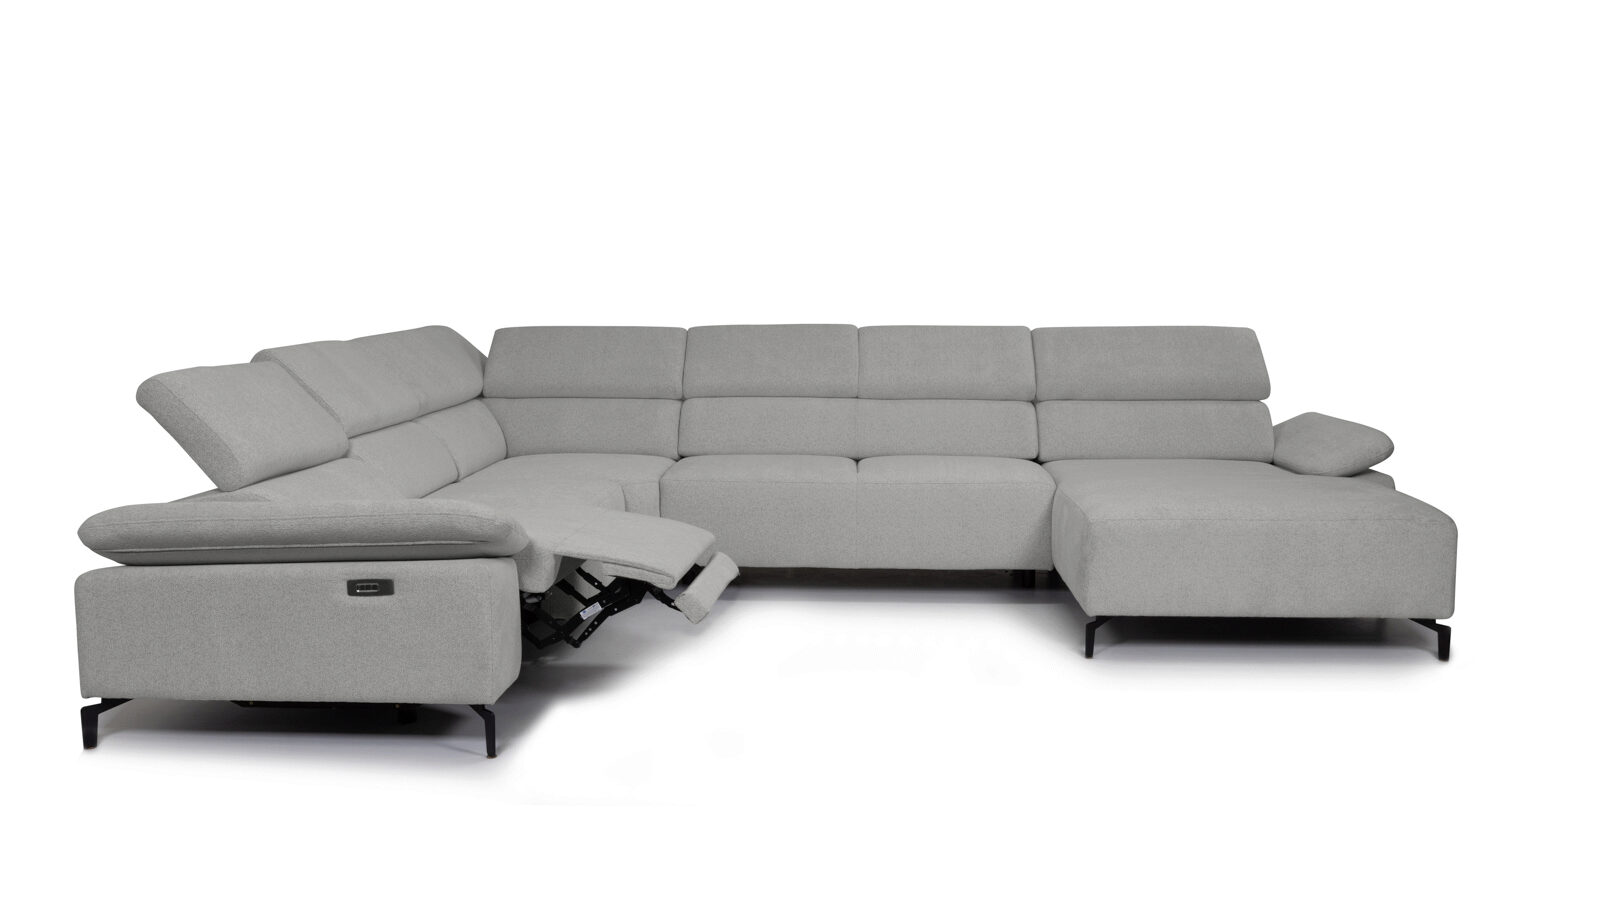 П-образный диван Square new с реклайнером слева